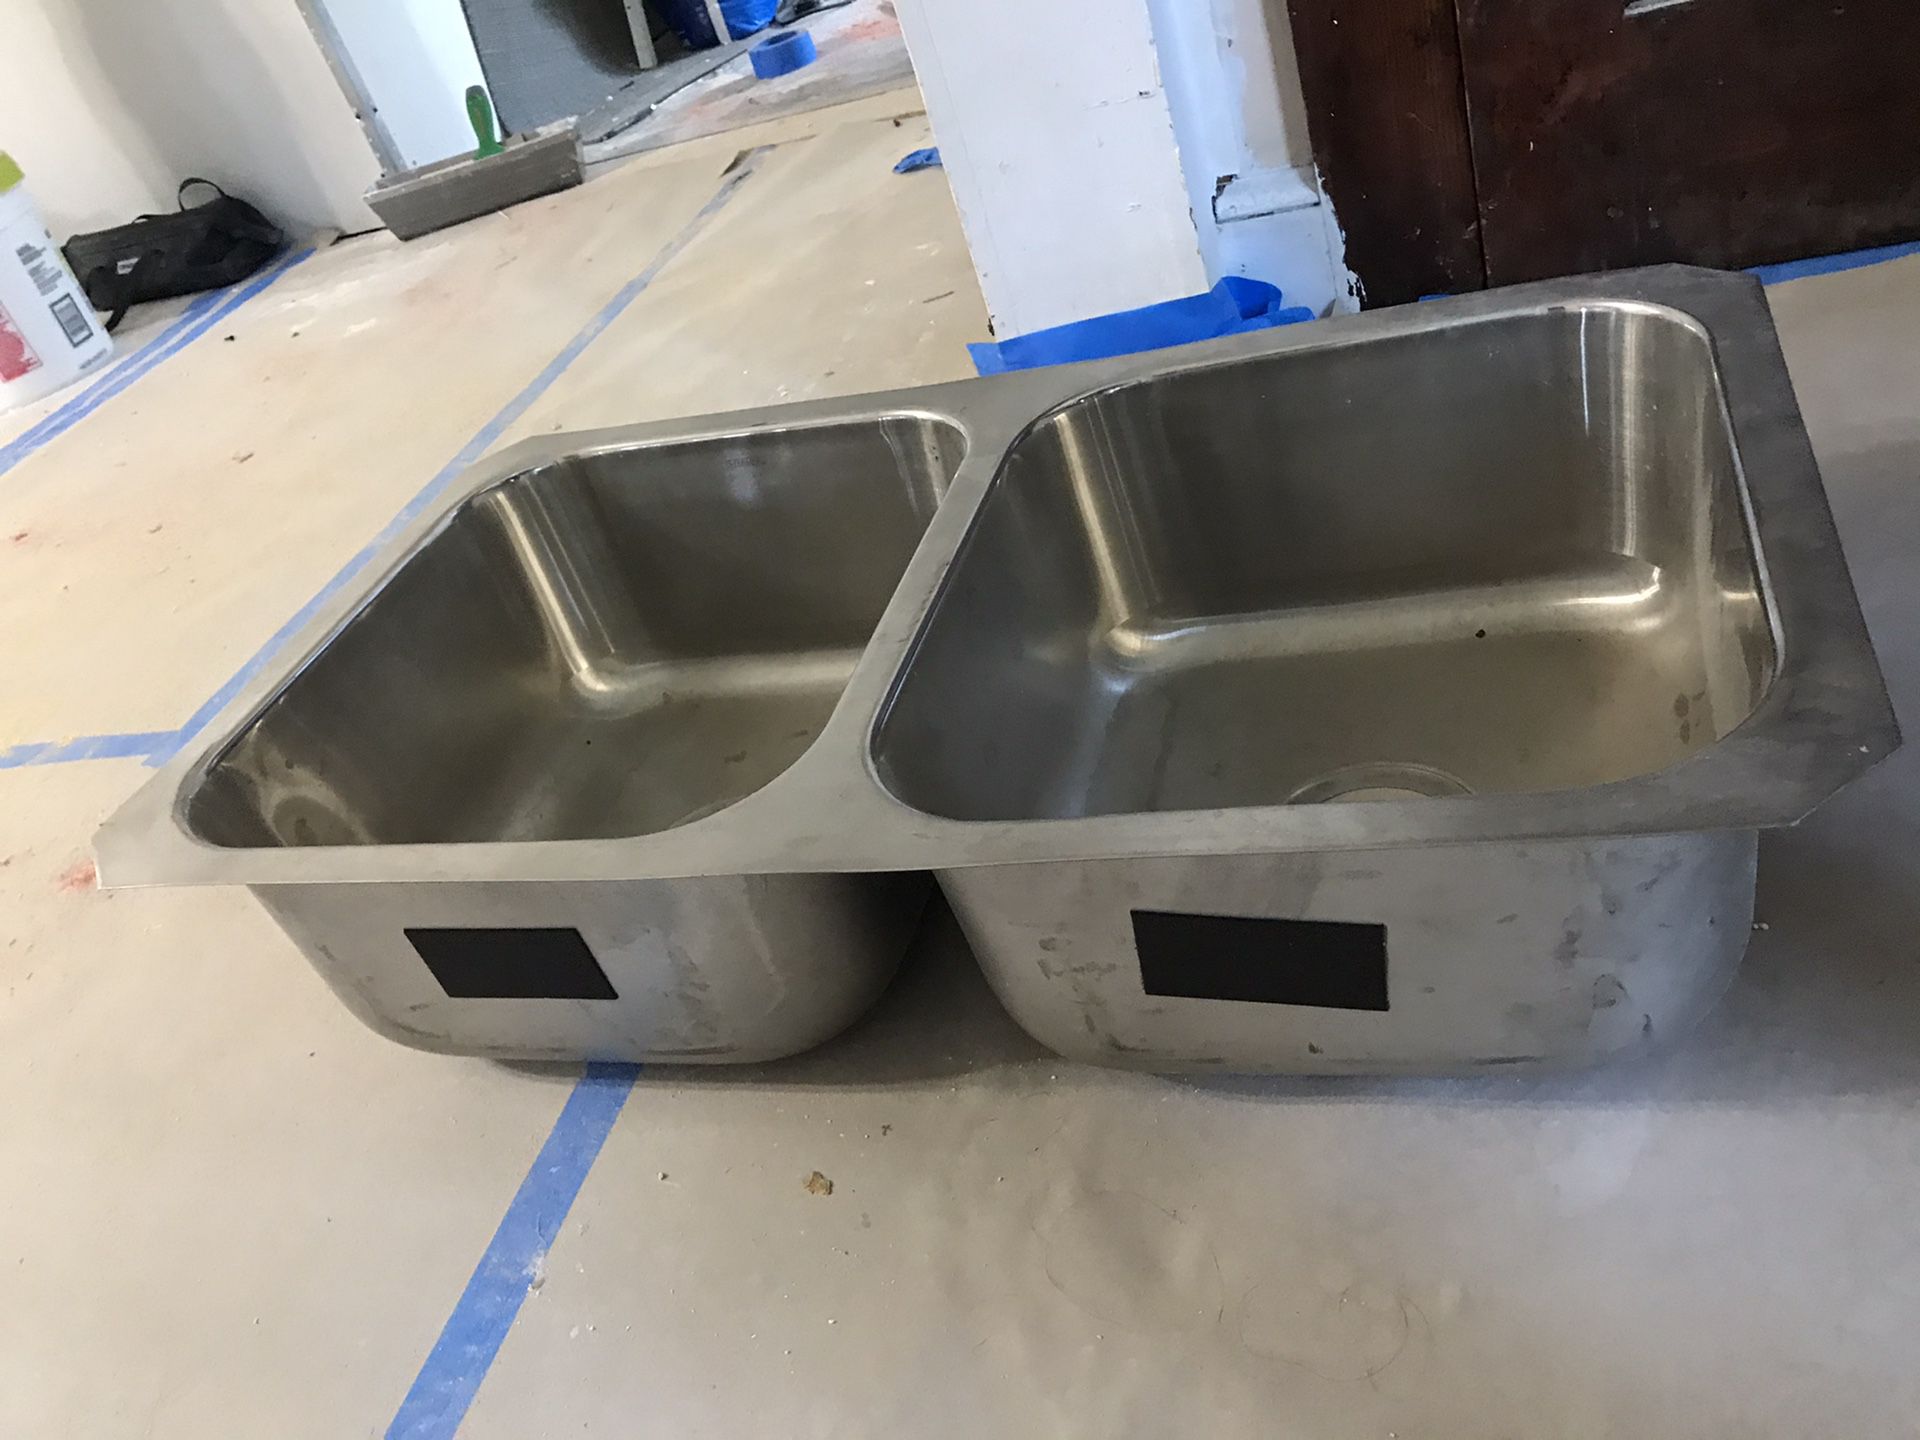 McAllister 32" Double Basin Undermount Stainless Steel Kitchen Sink with SilentShield